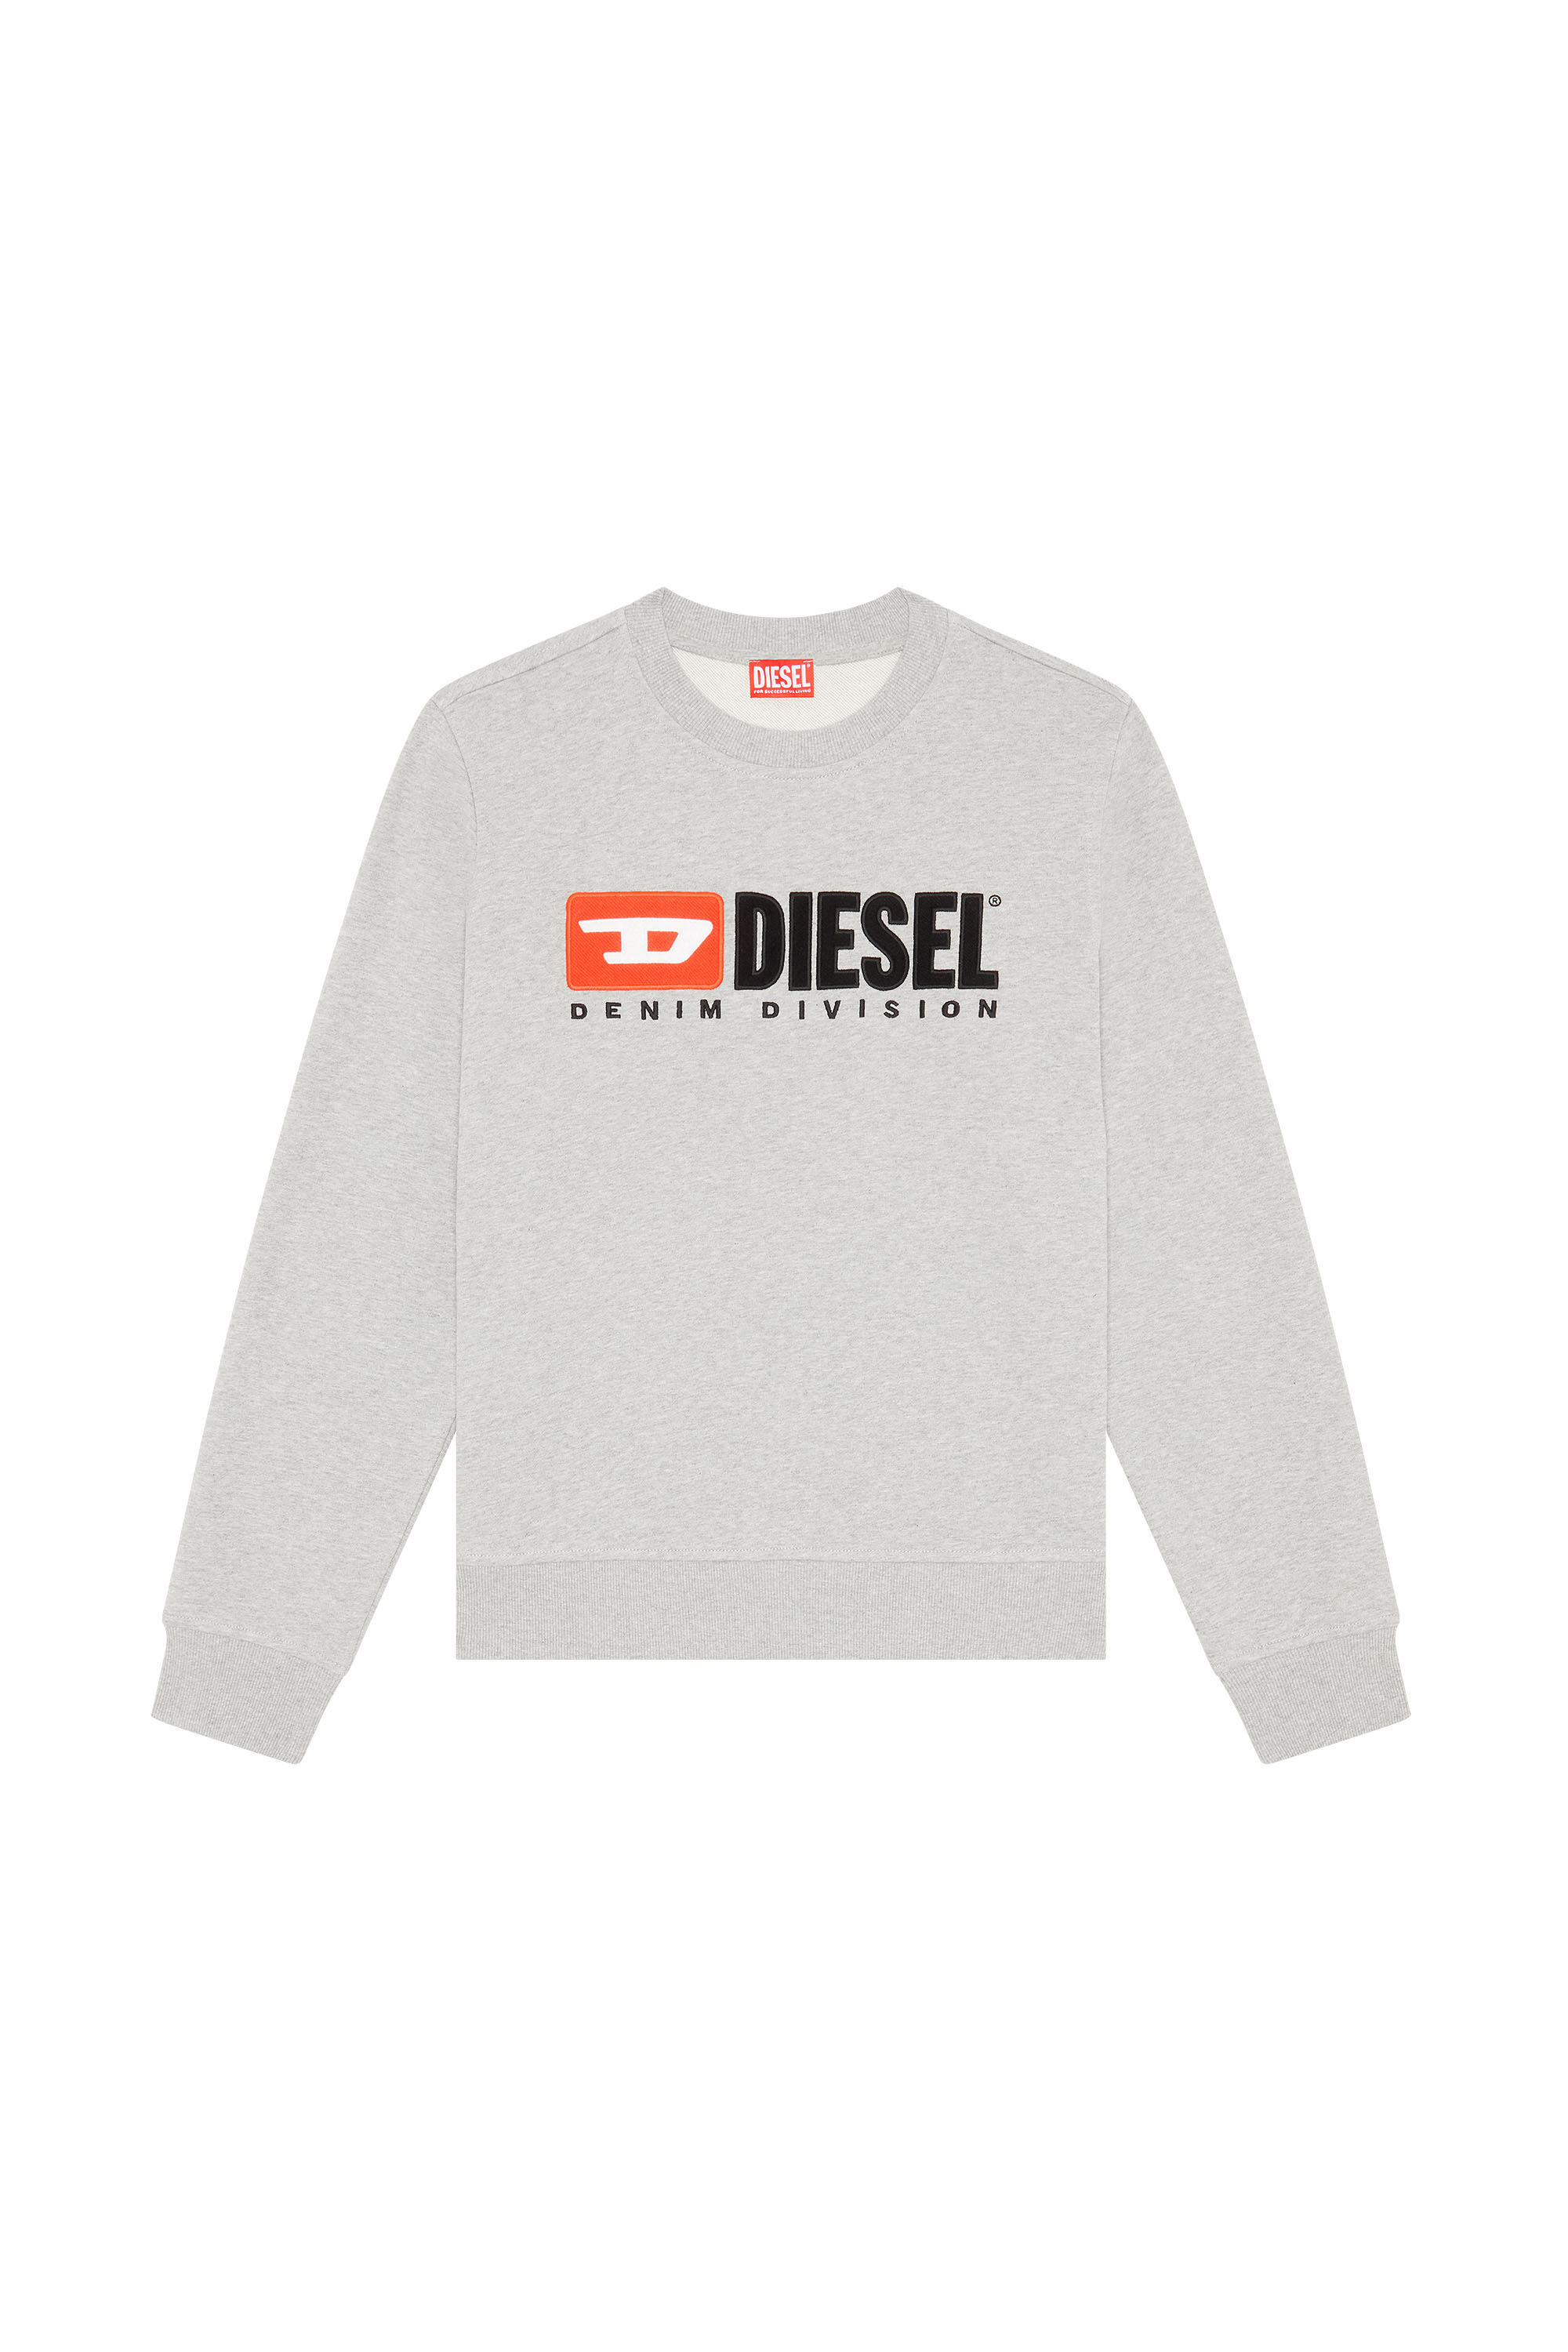 Diesel - S-GINN-DIV, Grigio - Image 2